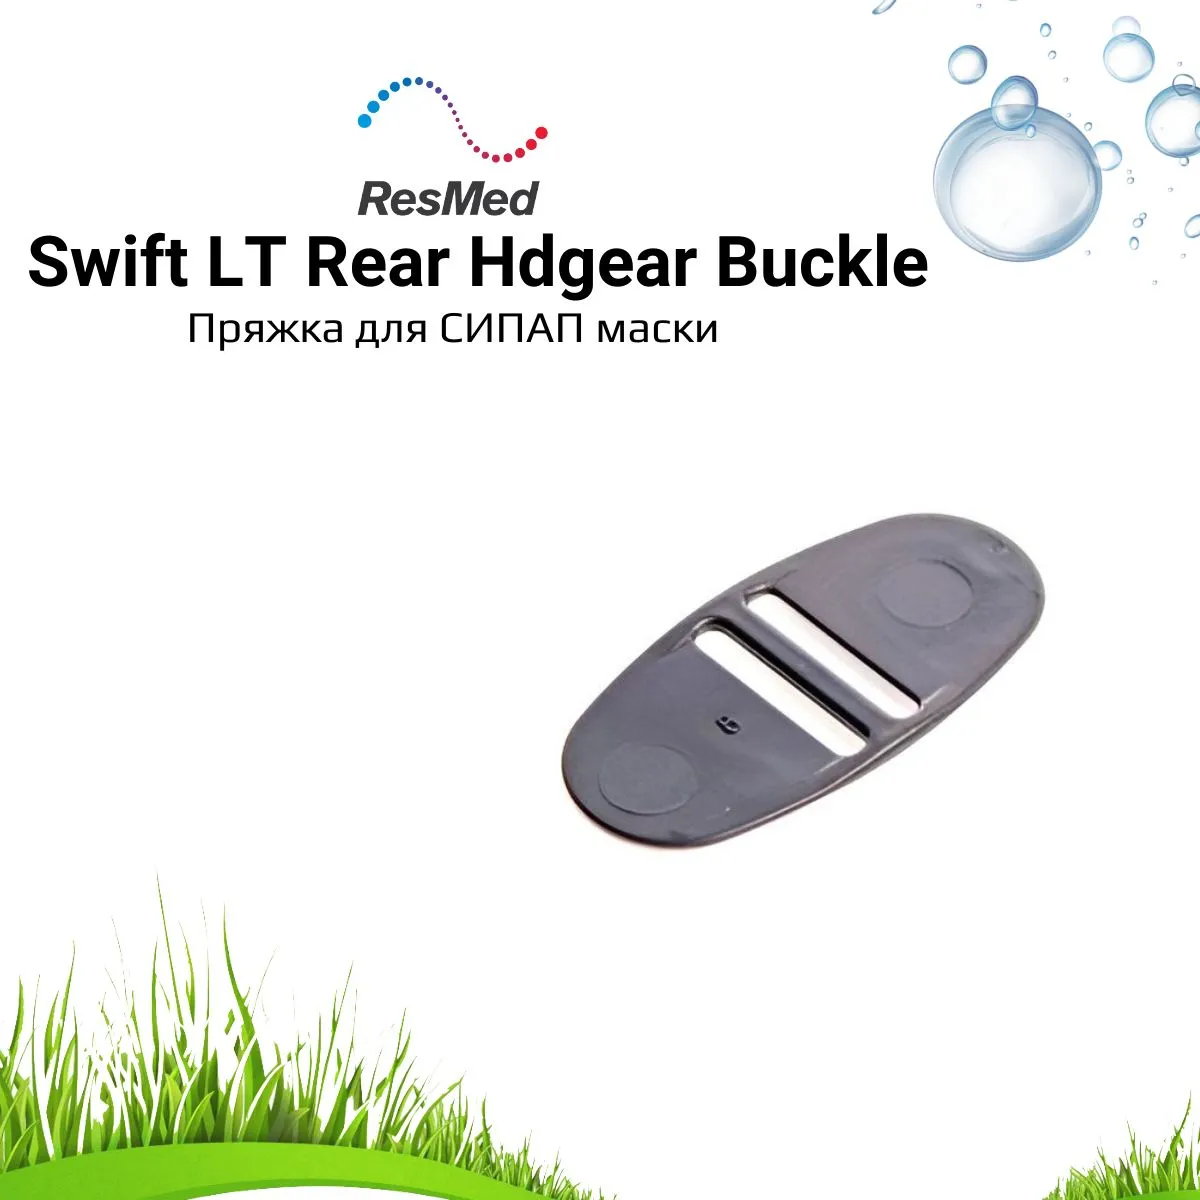 ResMed Swift LT Rear Headgear Buckle - пряжка для СИПАП маски